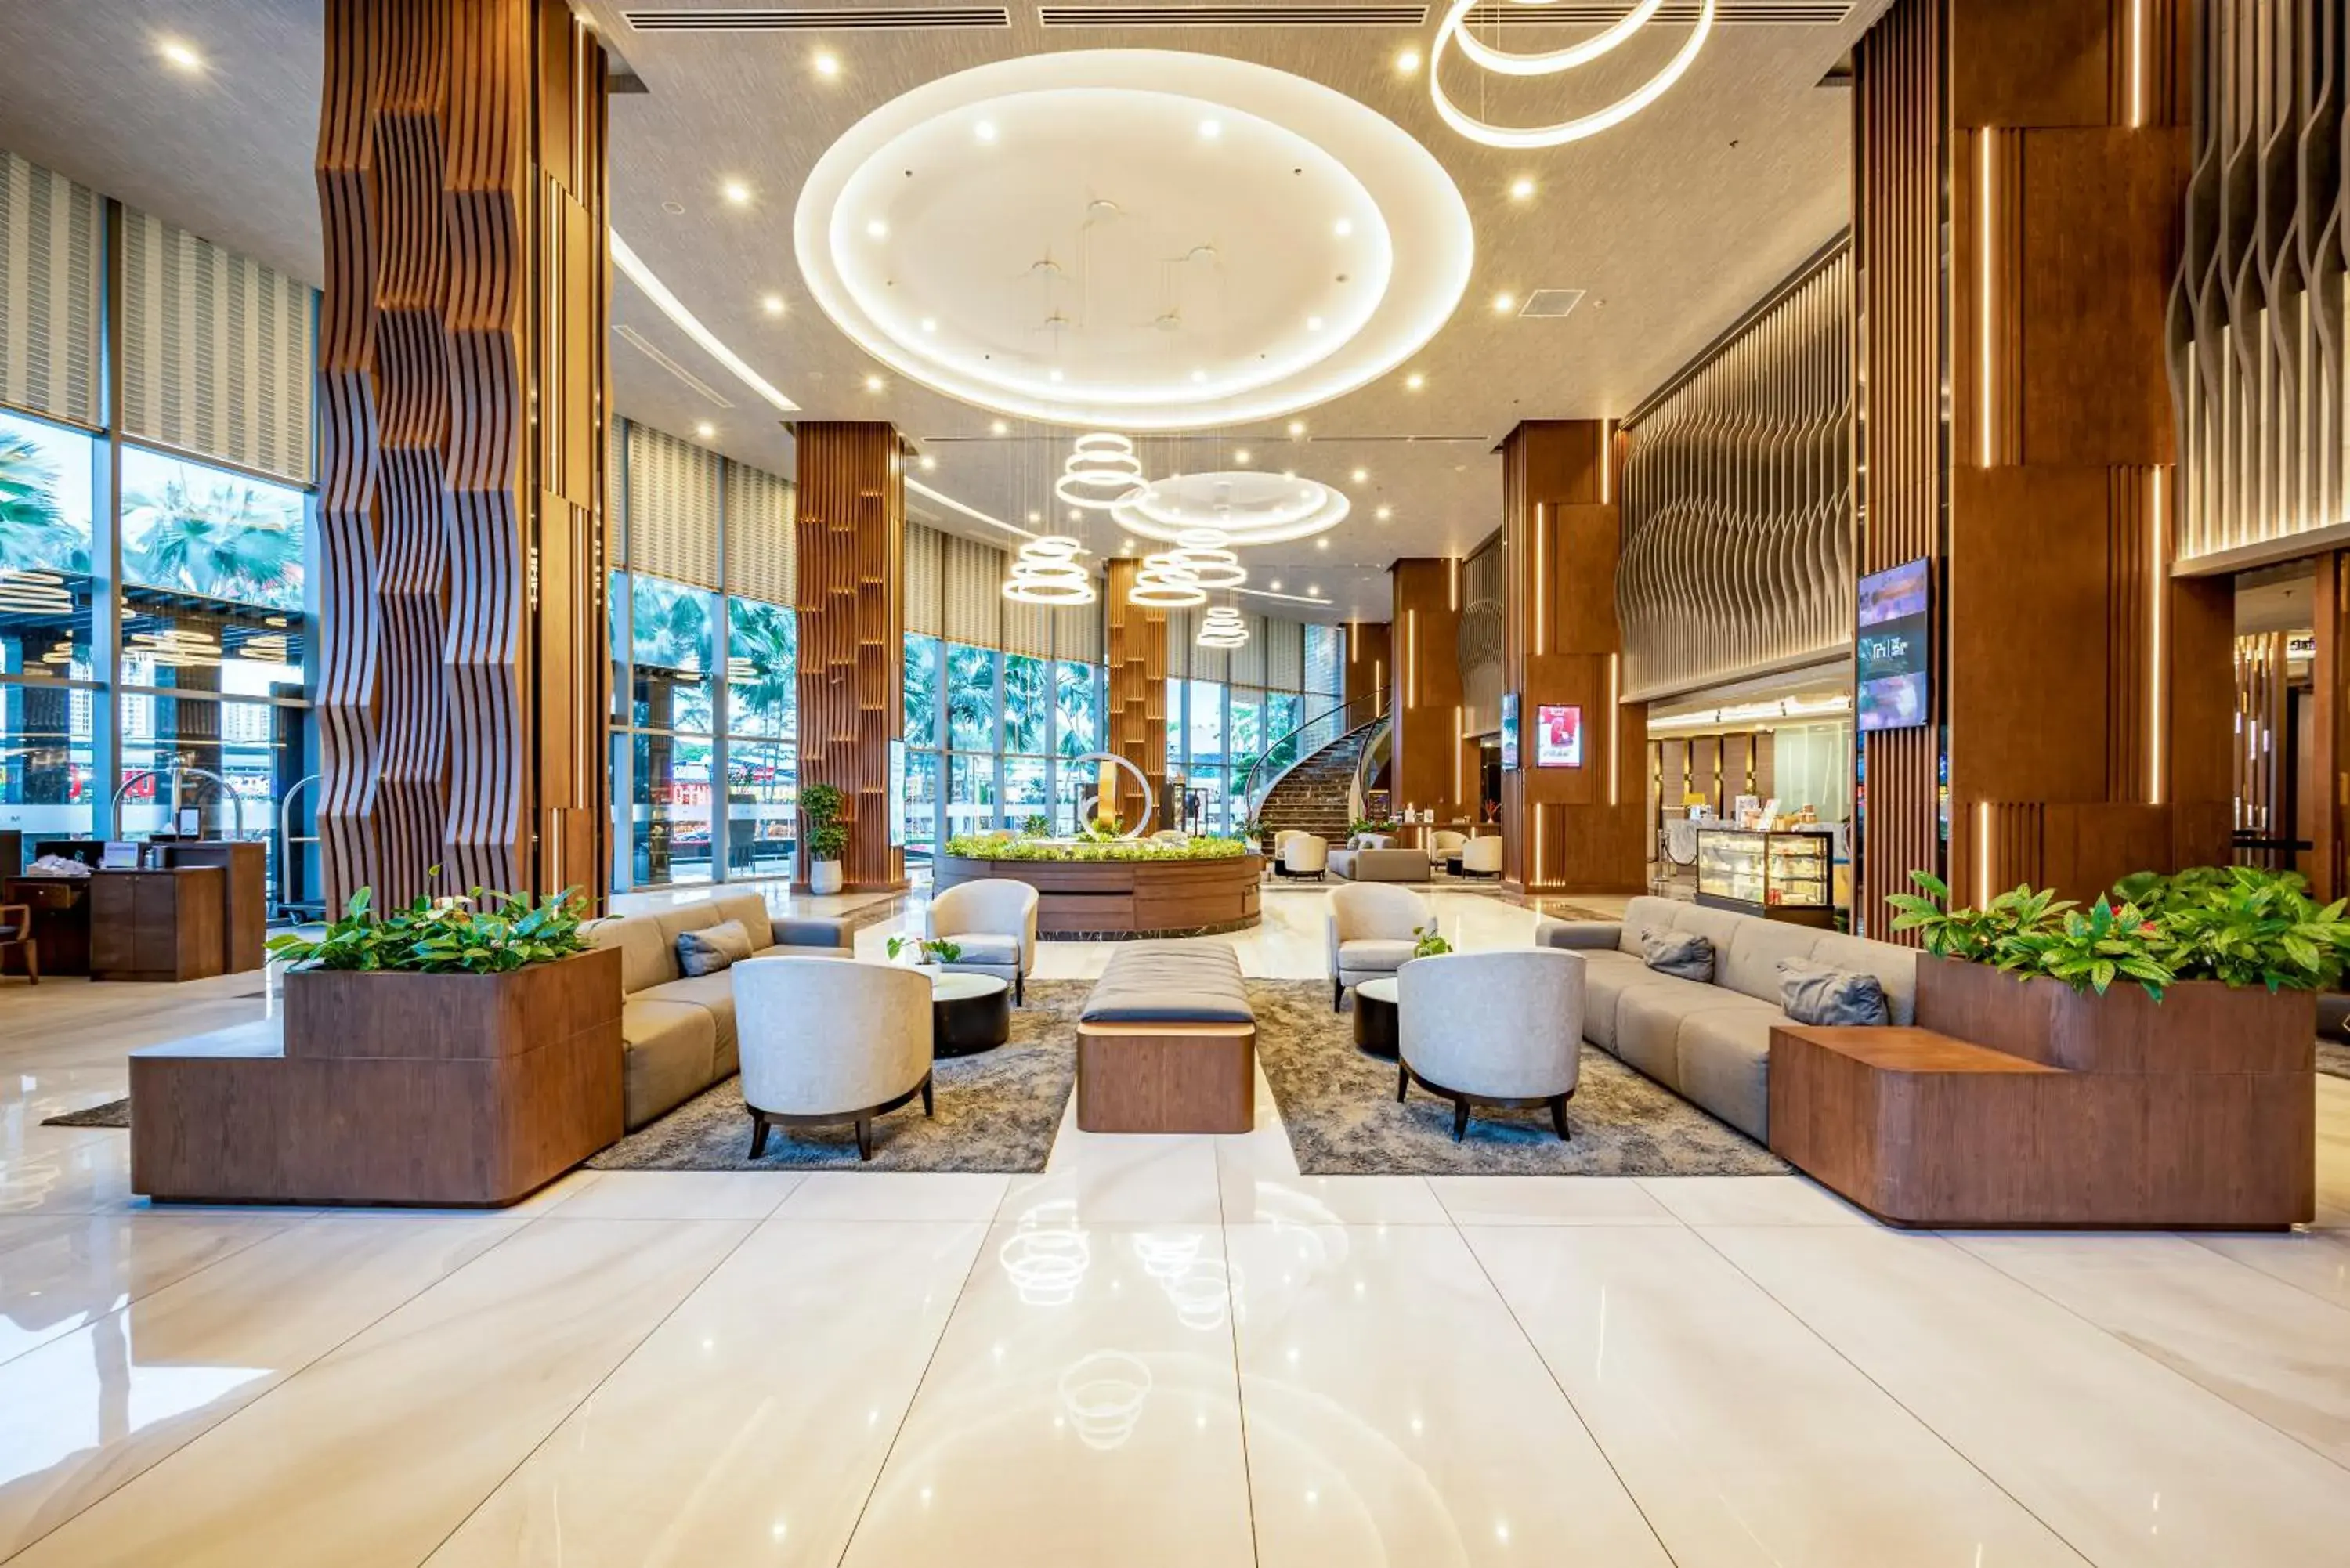 Lobby or reception, Lobby/Reception in Malibu Hotel